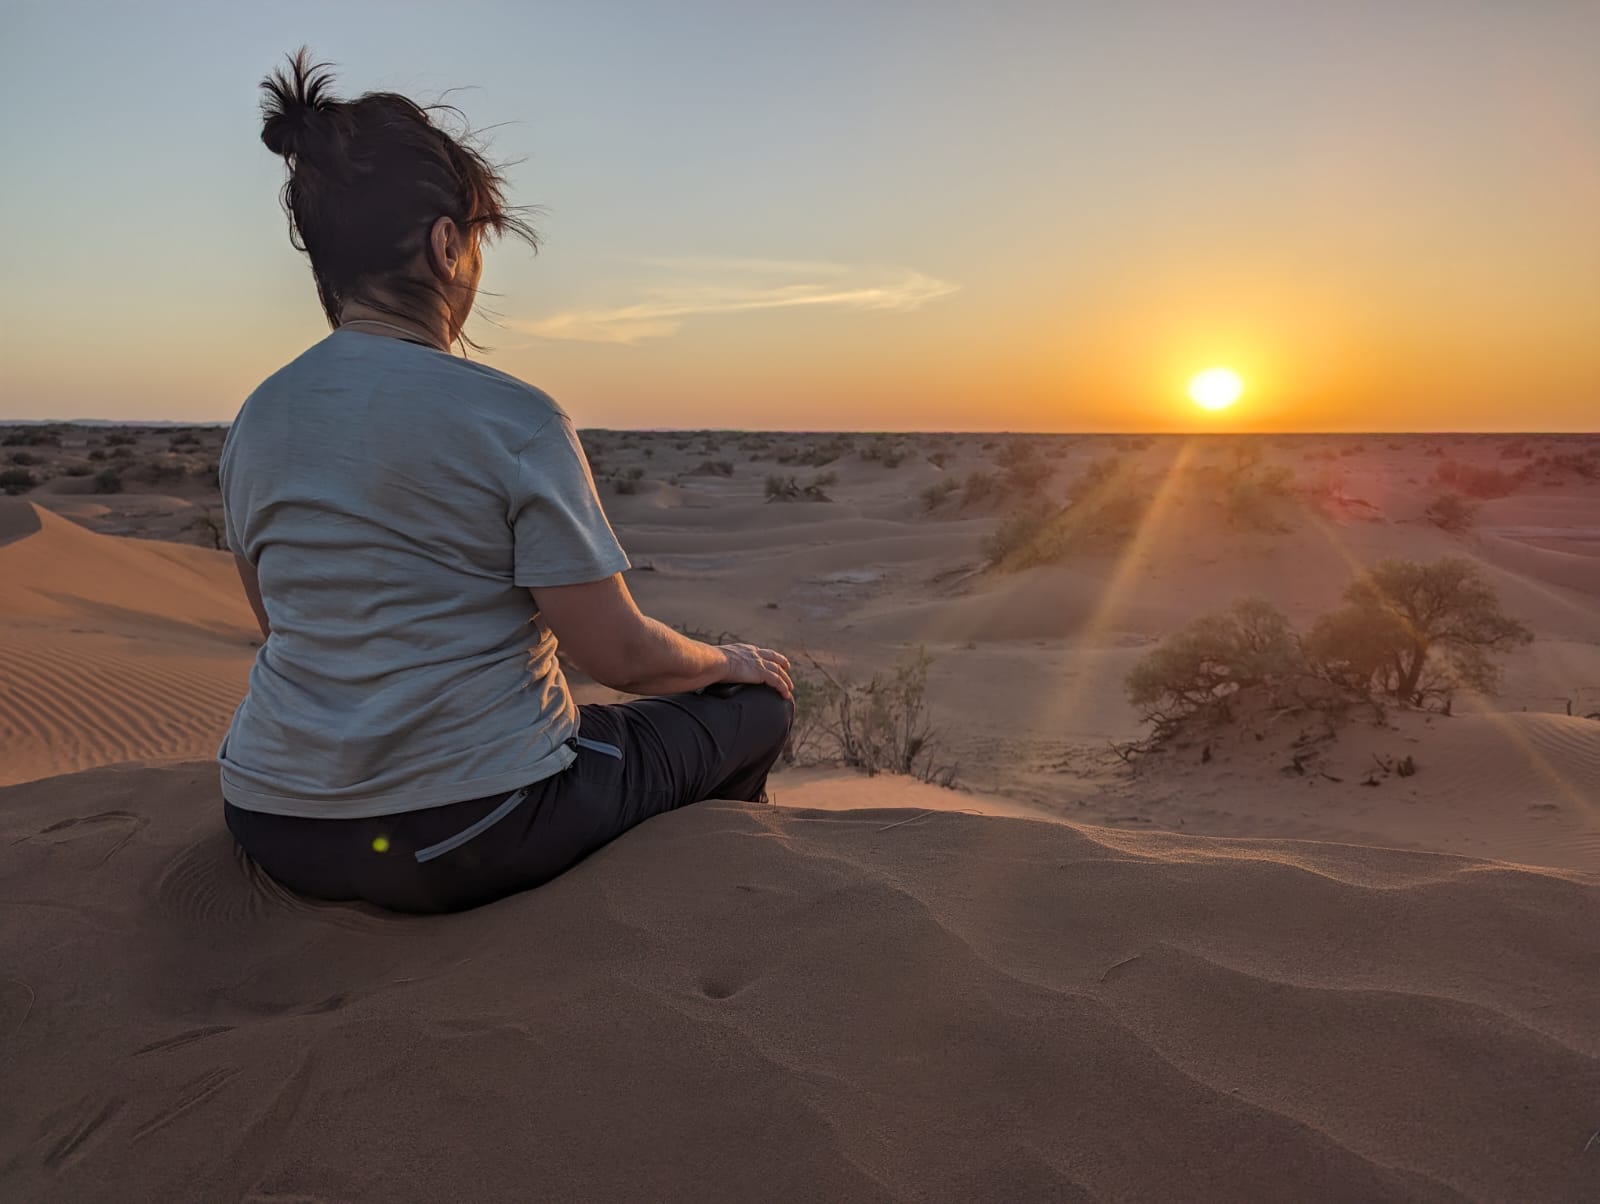 Mon expérience inoubliable dans le désert marocain